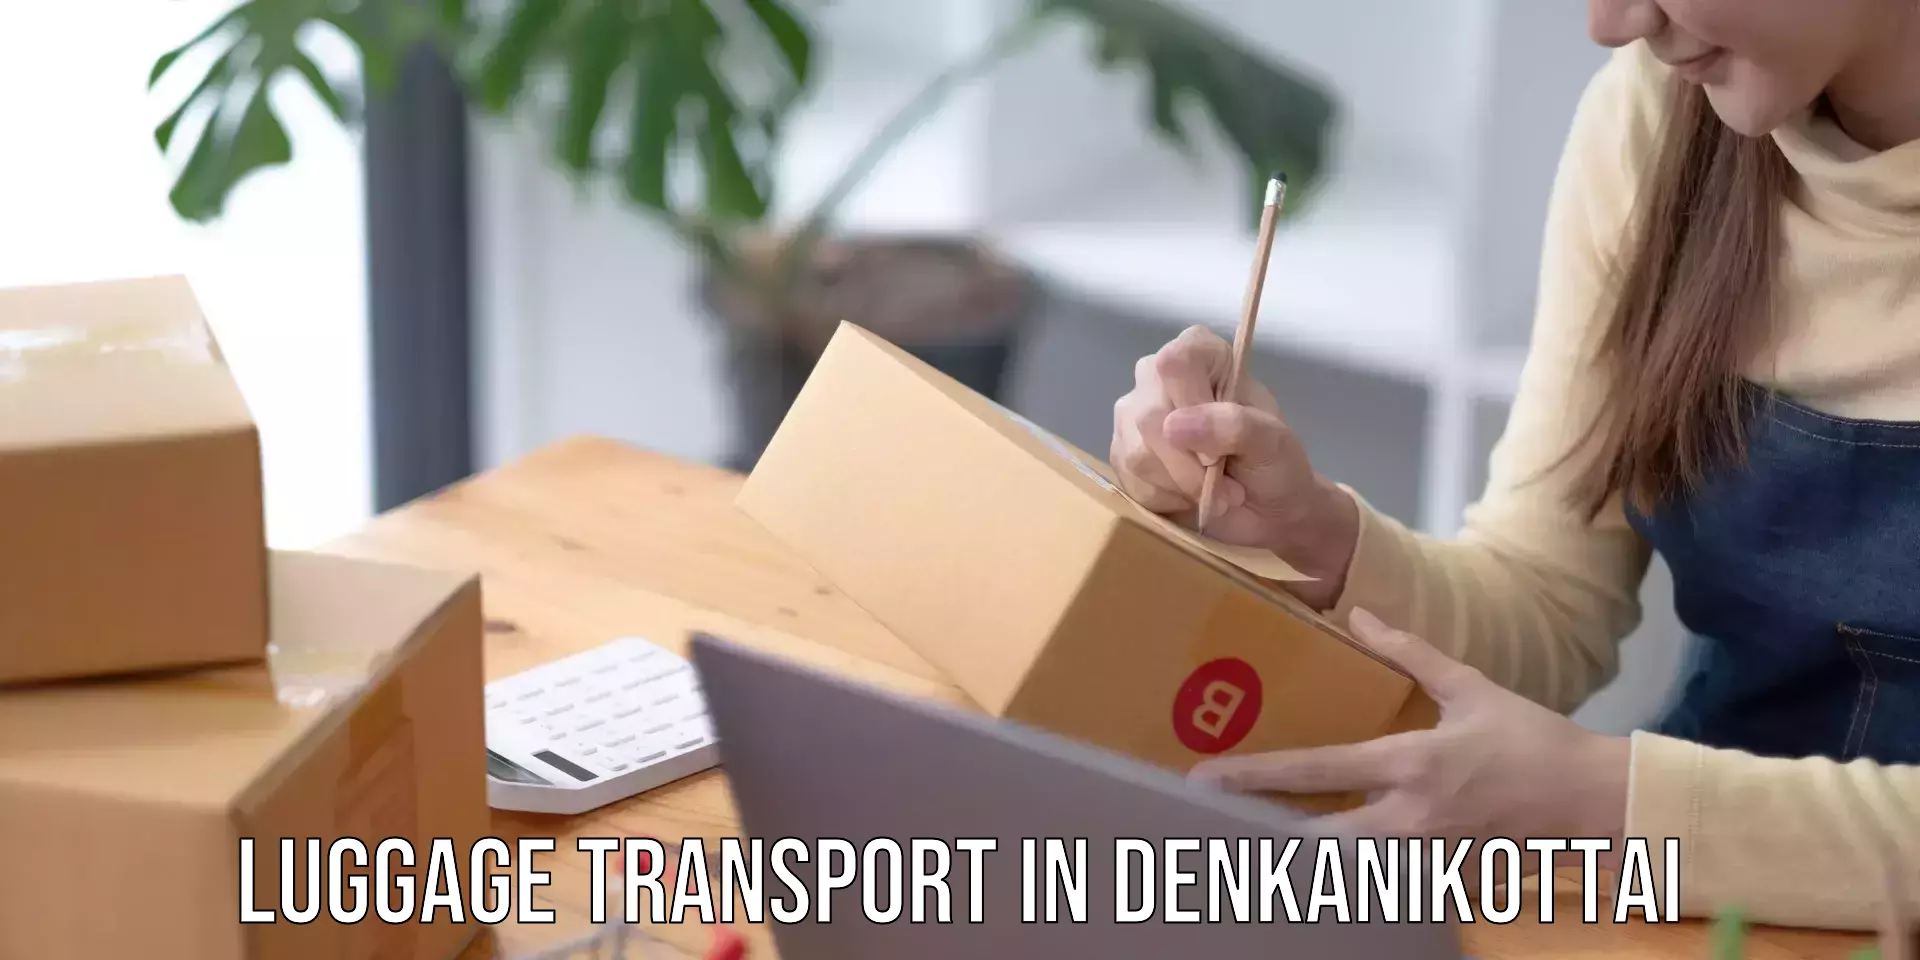 Express luggage delivery in Denkanikottai